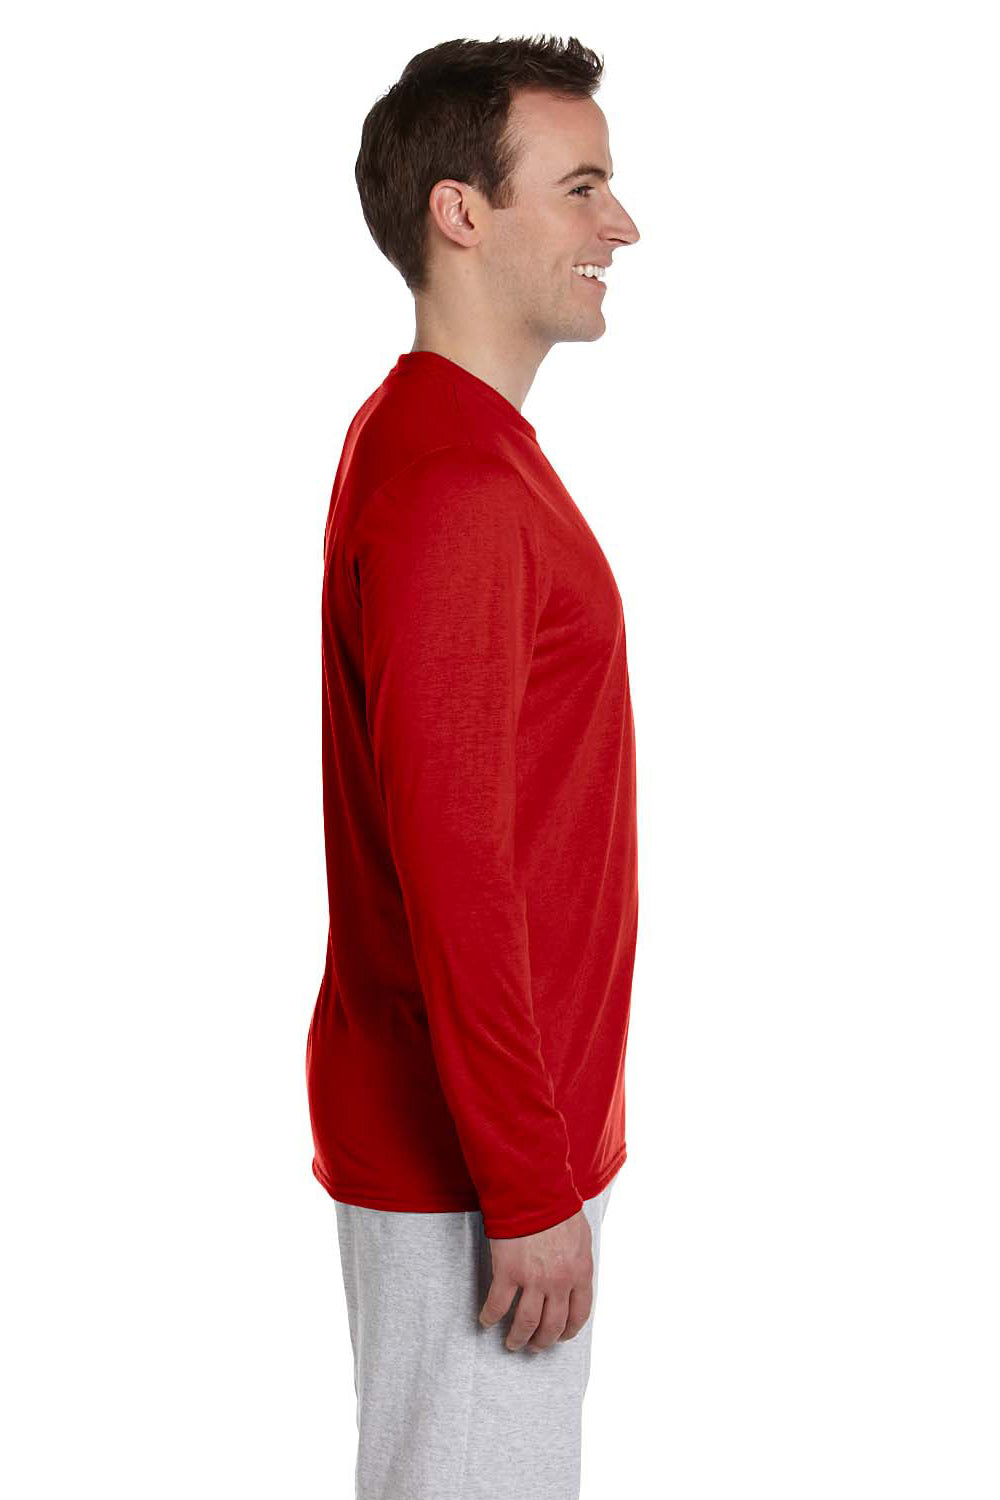 Gildan G424 Mens Performance Jersey Moisture Wicking Long Sleeve Crewneck T-Shirt Red Side